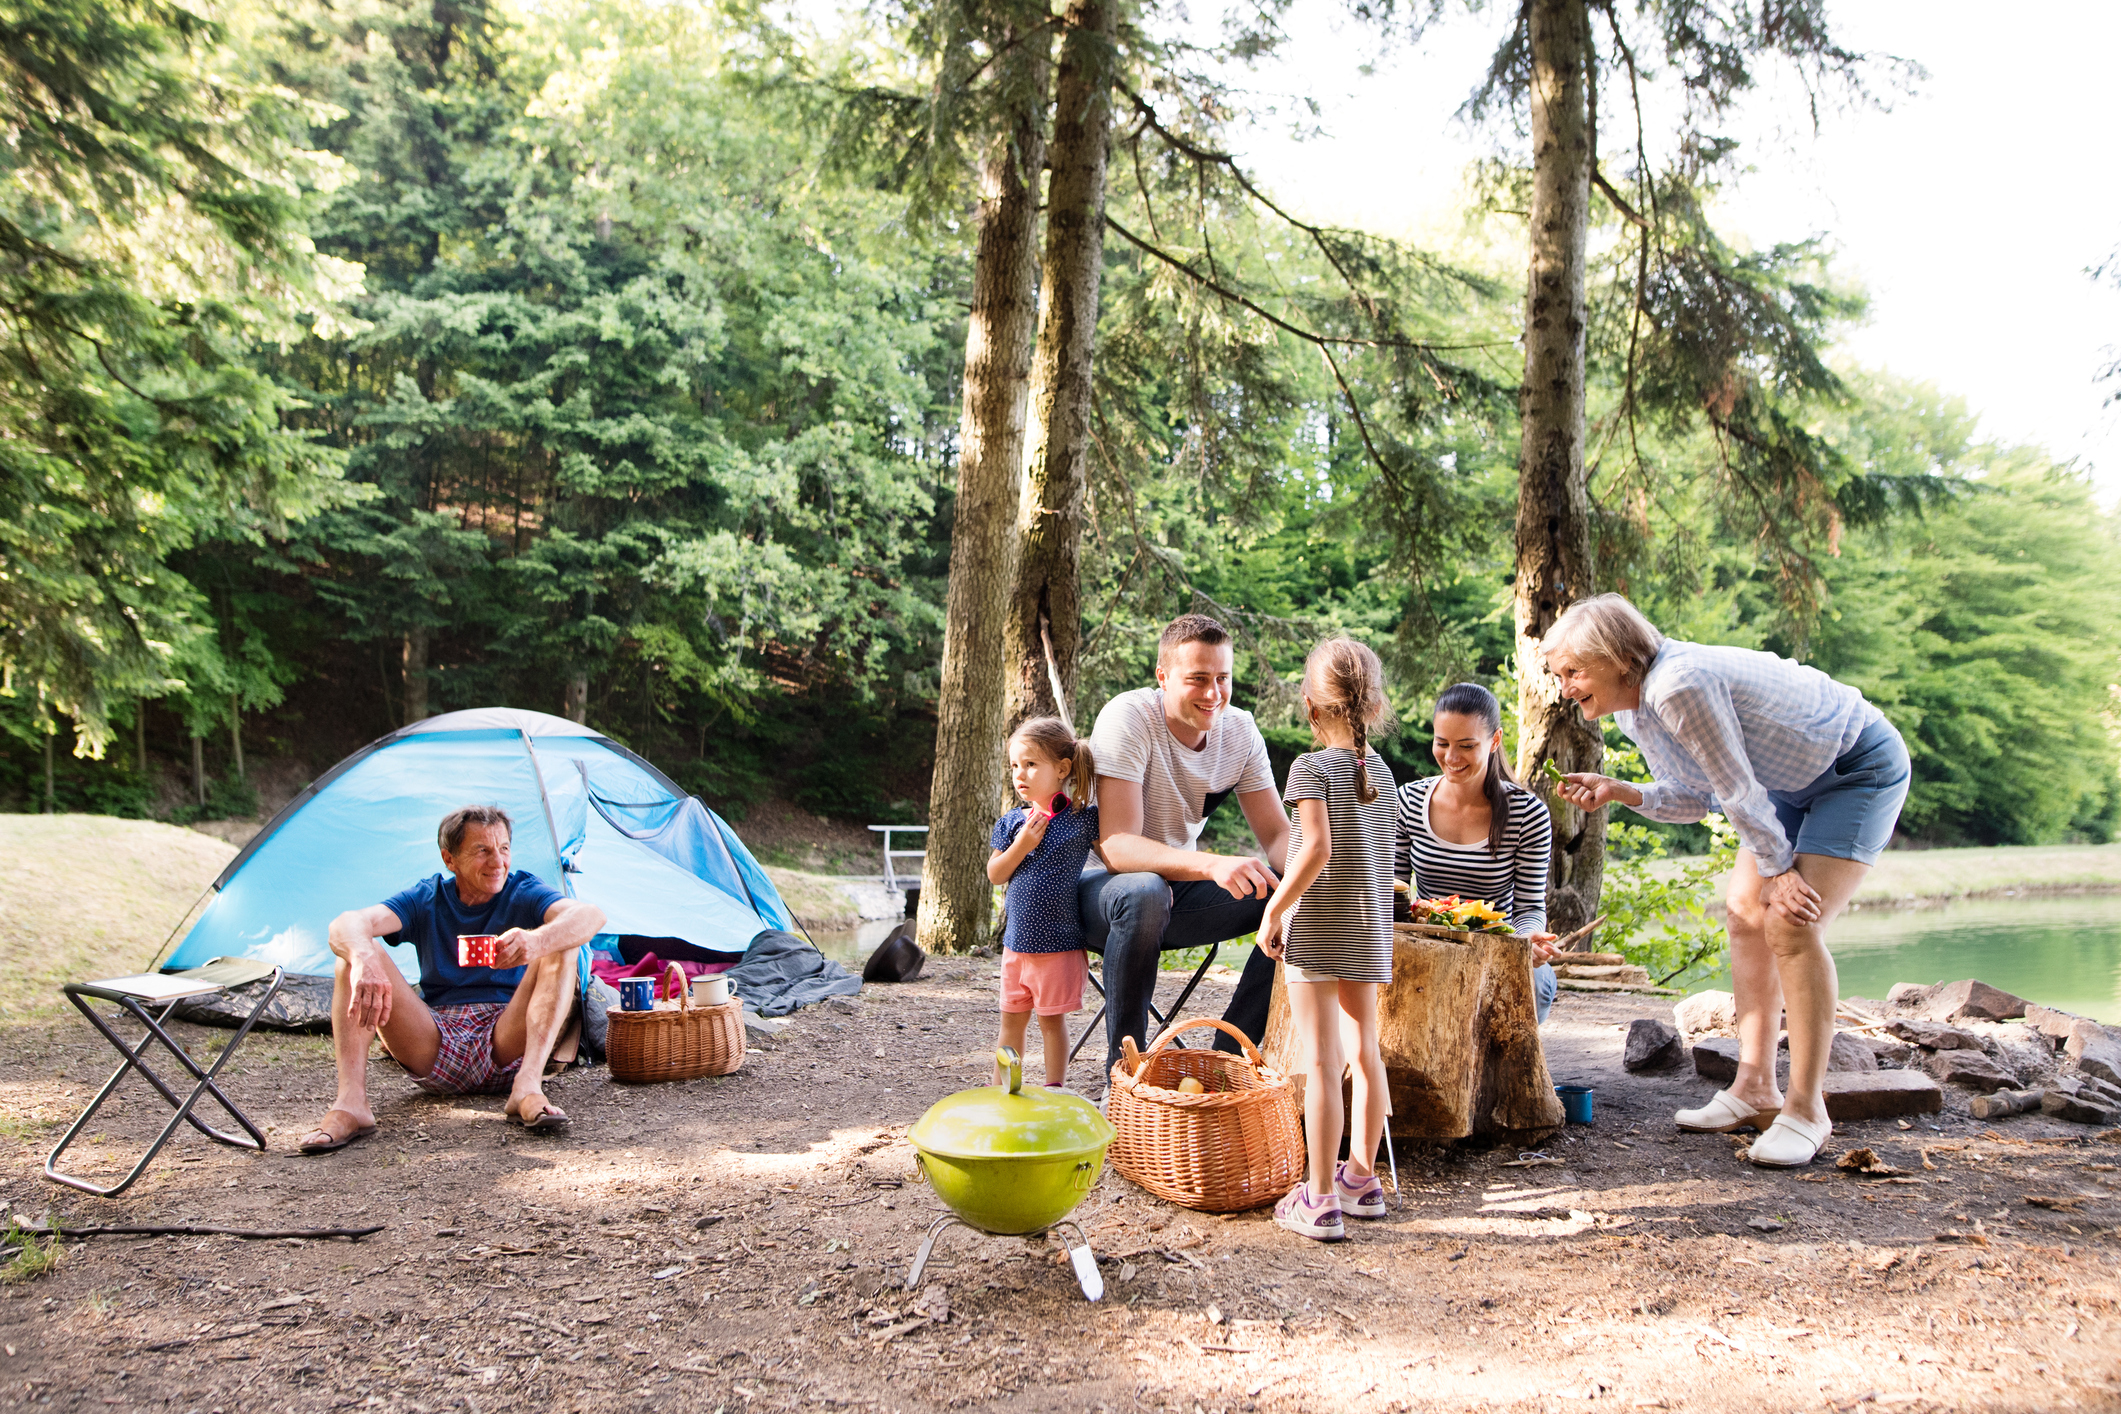 Look at the camp. Кемпинг с детьми. Кемпинг в лесу. Семья в походе. Семейный кемпинг в лесу.